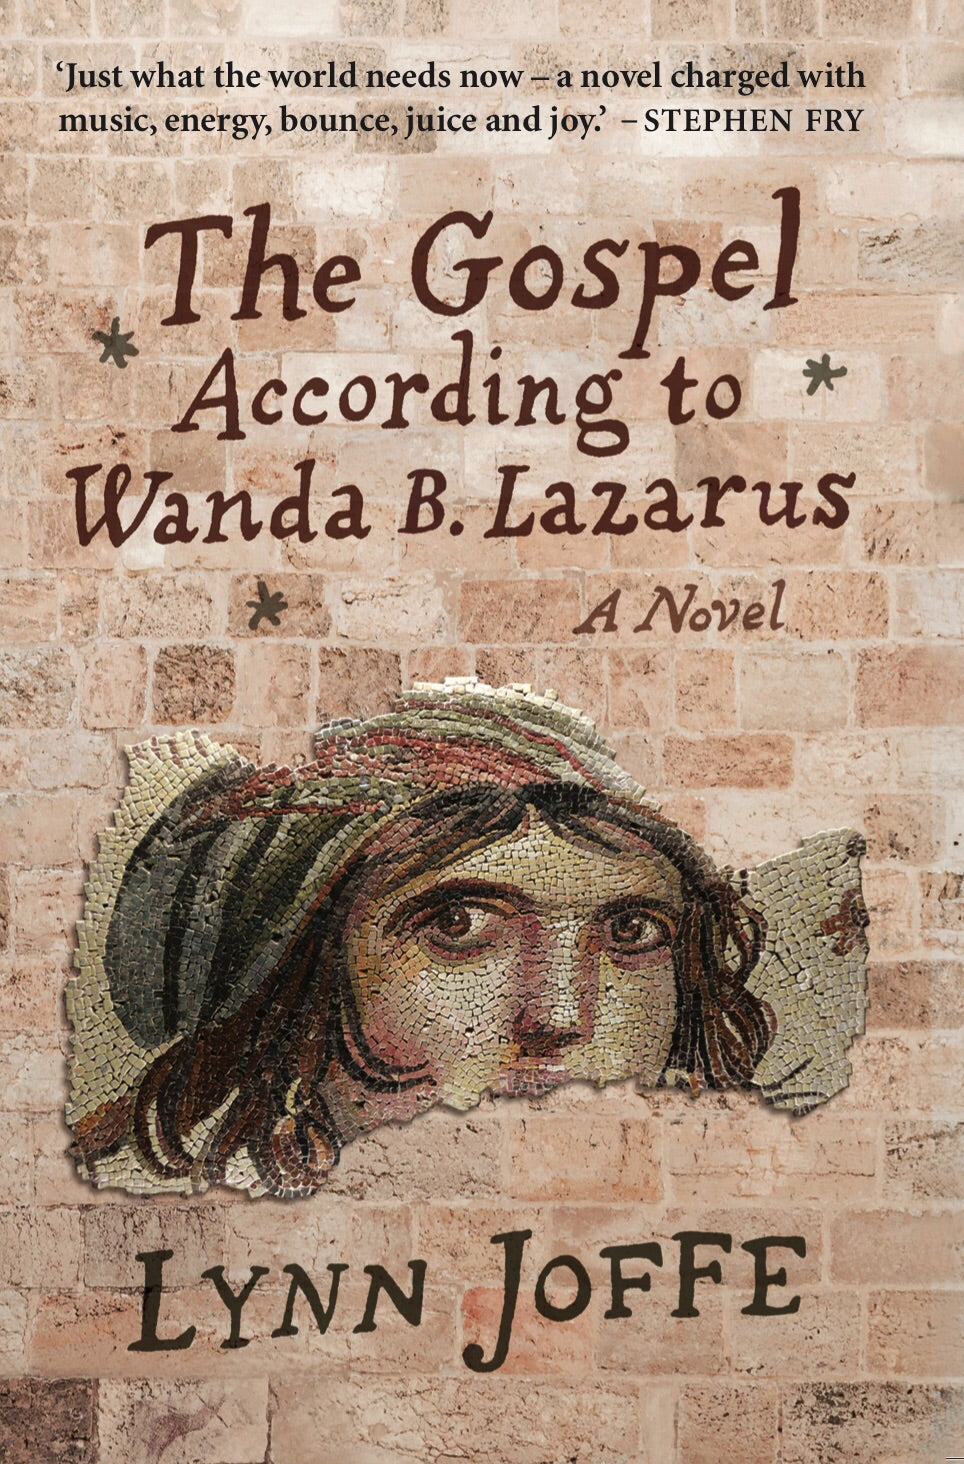 The Gospel According to Wanda B. Lazarus, by Lynn Joffe